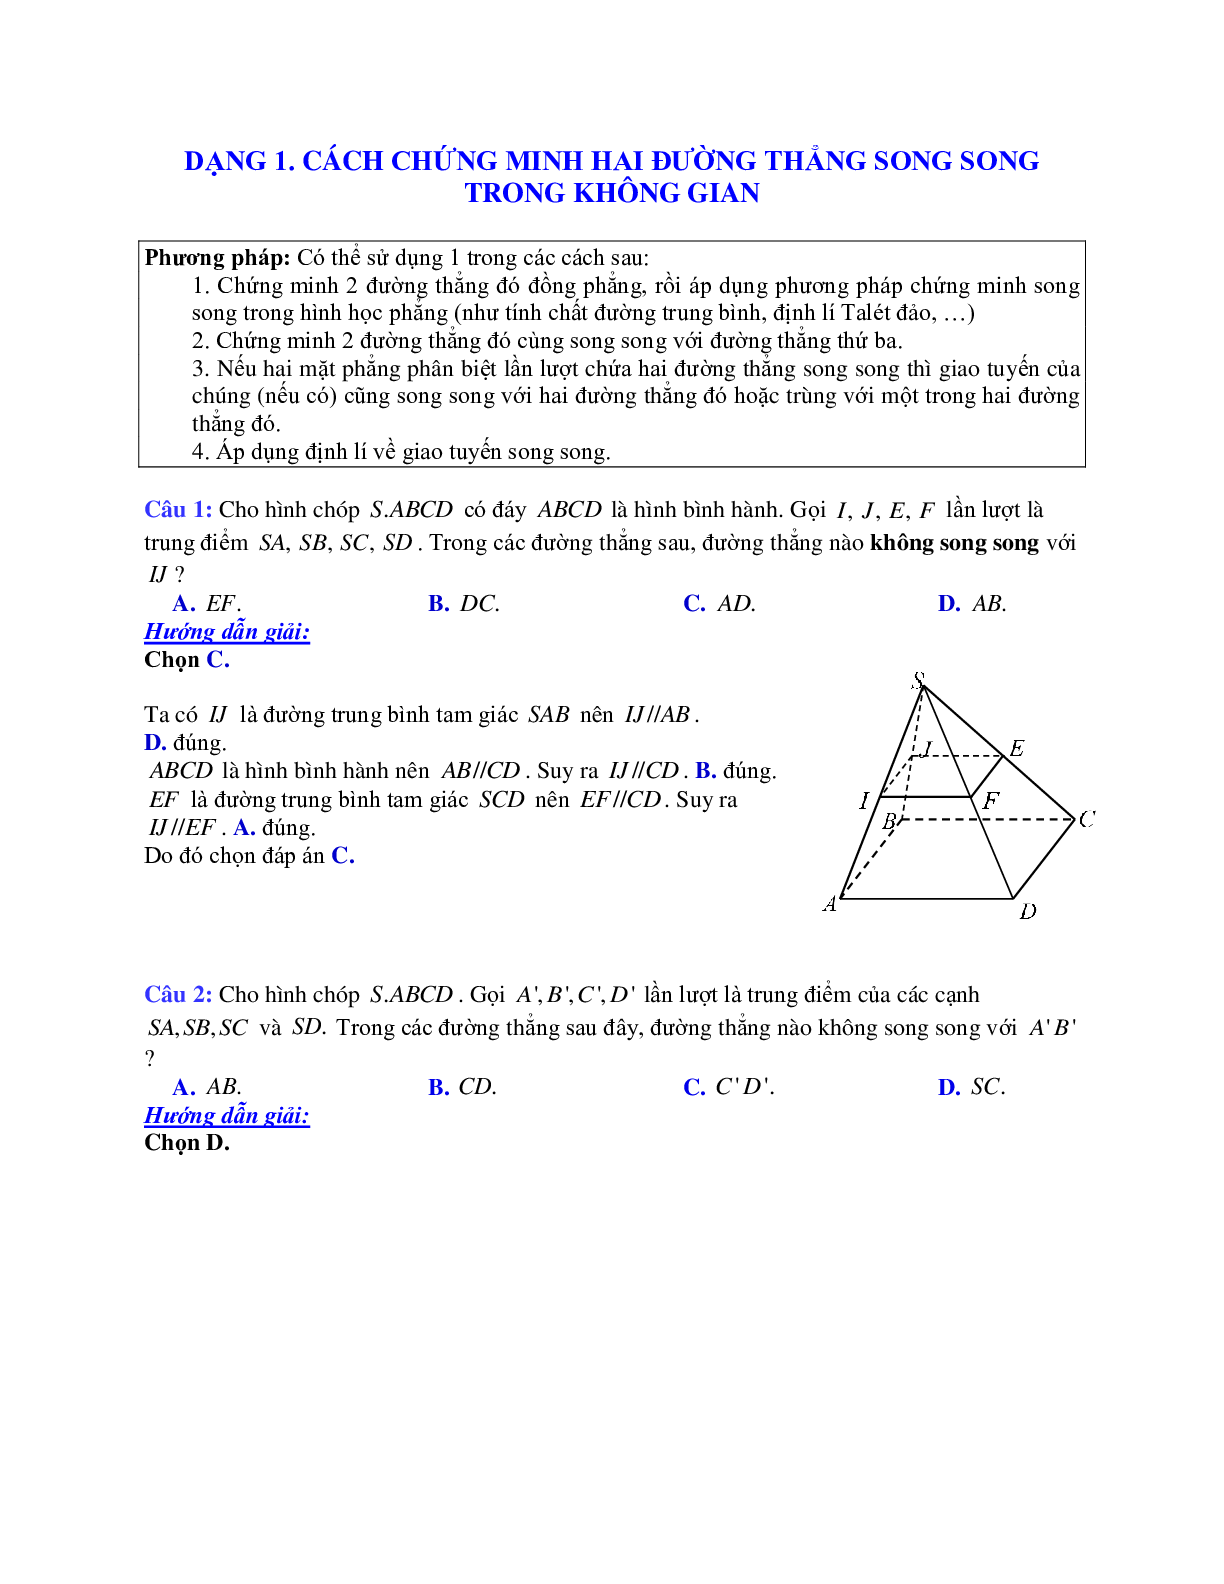 Phương pháp giải và bài tập về Cách chứng minh hai đường thẳng song song trong không gian (trang 1)